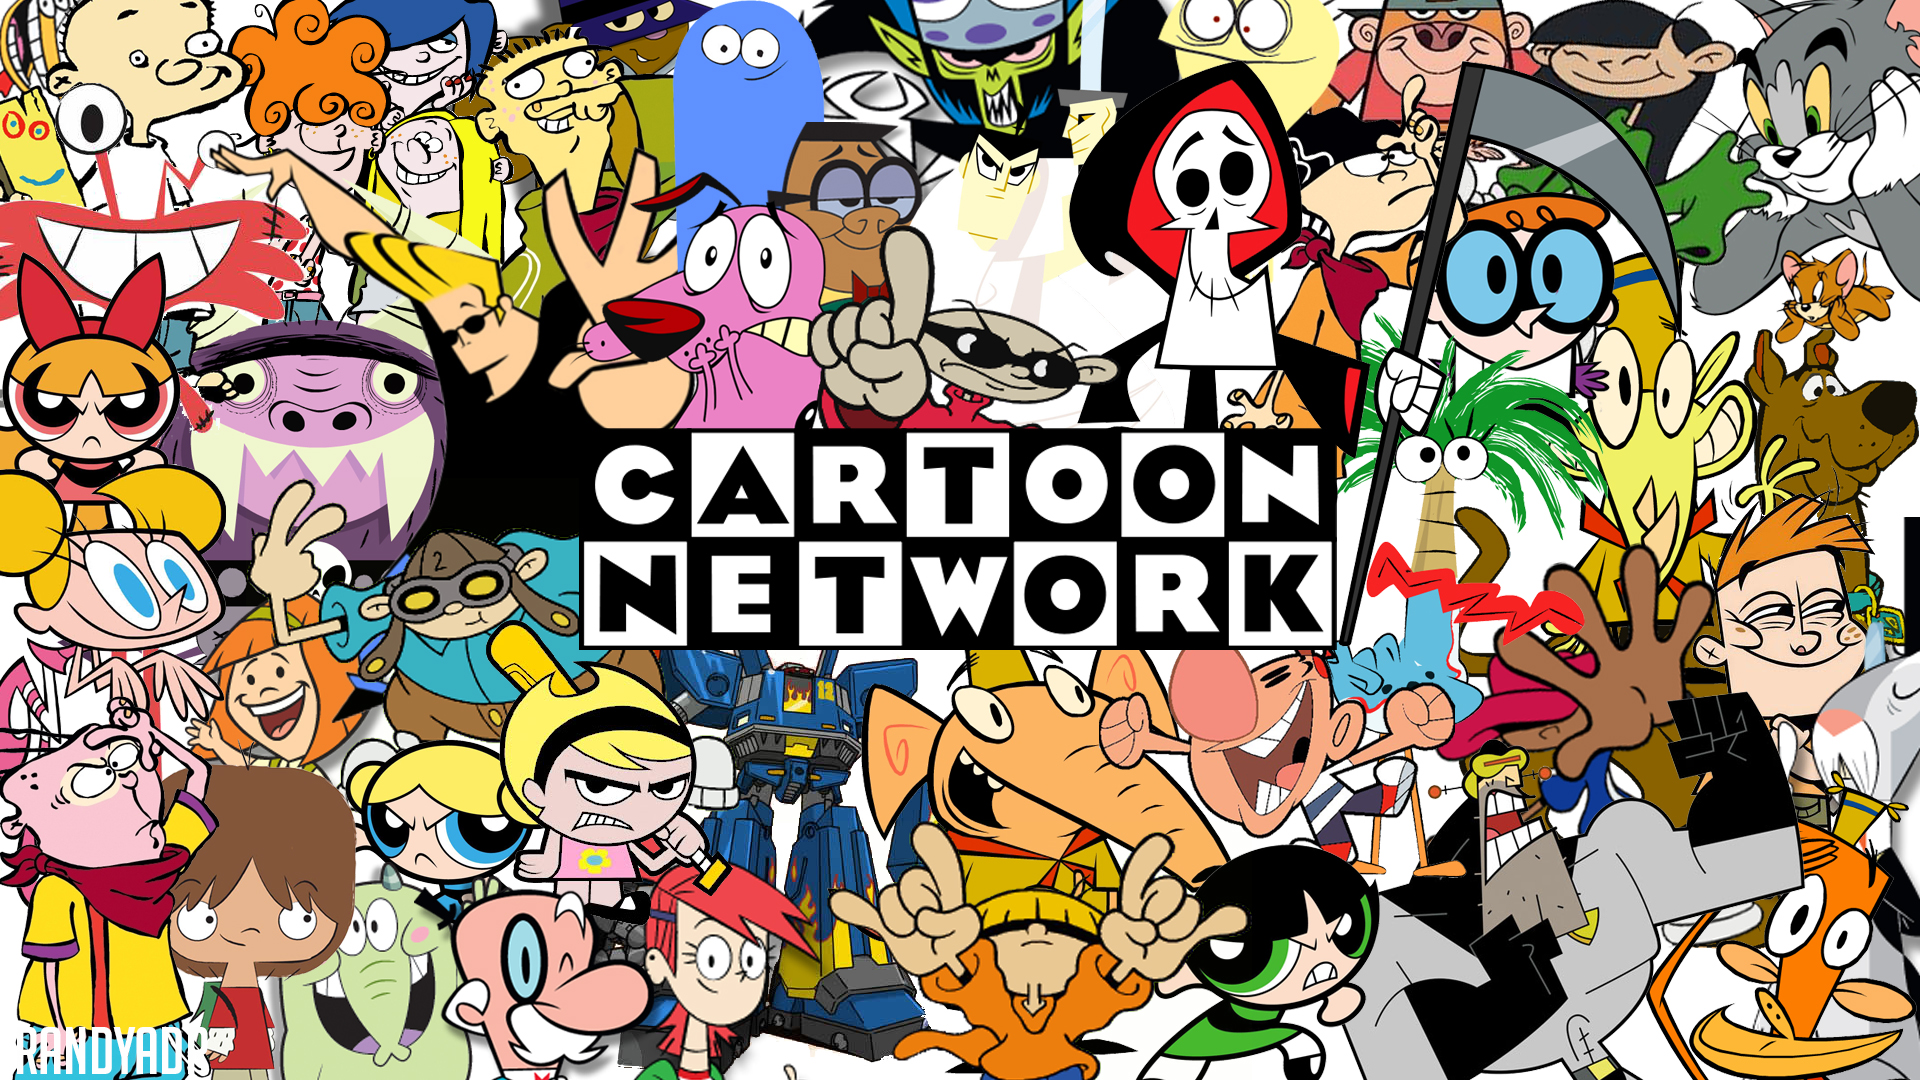 Cartoon Network là một kênh truyền hình giải trí của Mỹ với những bộ phim hoạt hình hấp dẫn từ các studio lớn như Cartoon Network Studios, Warner Bros.. Với đội ngũ toàn những nhân vật đáng yêu và hài hước, Cartoon Network sẽ luôn mang đến cho bạn những giờ phút giải trí vô bờ bến.